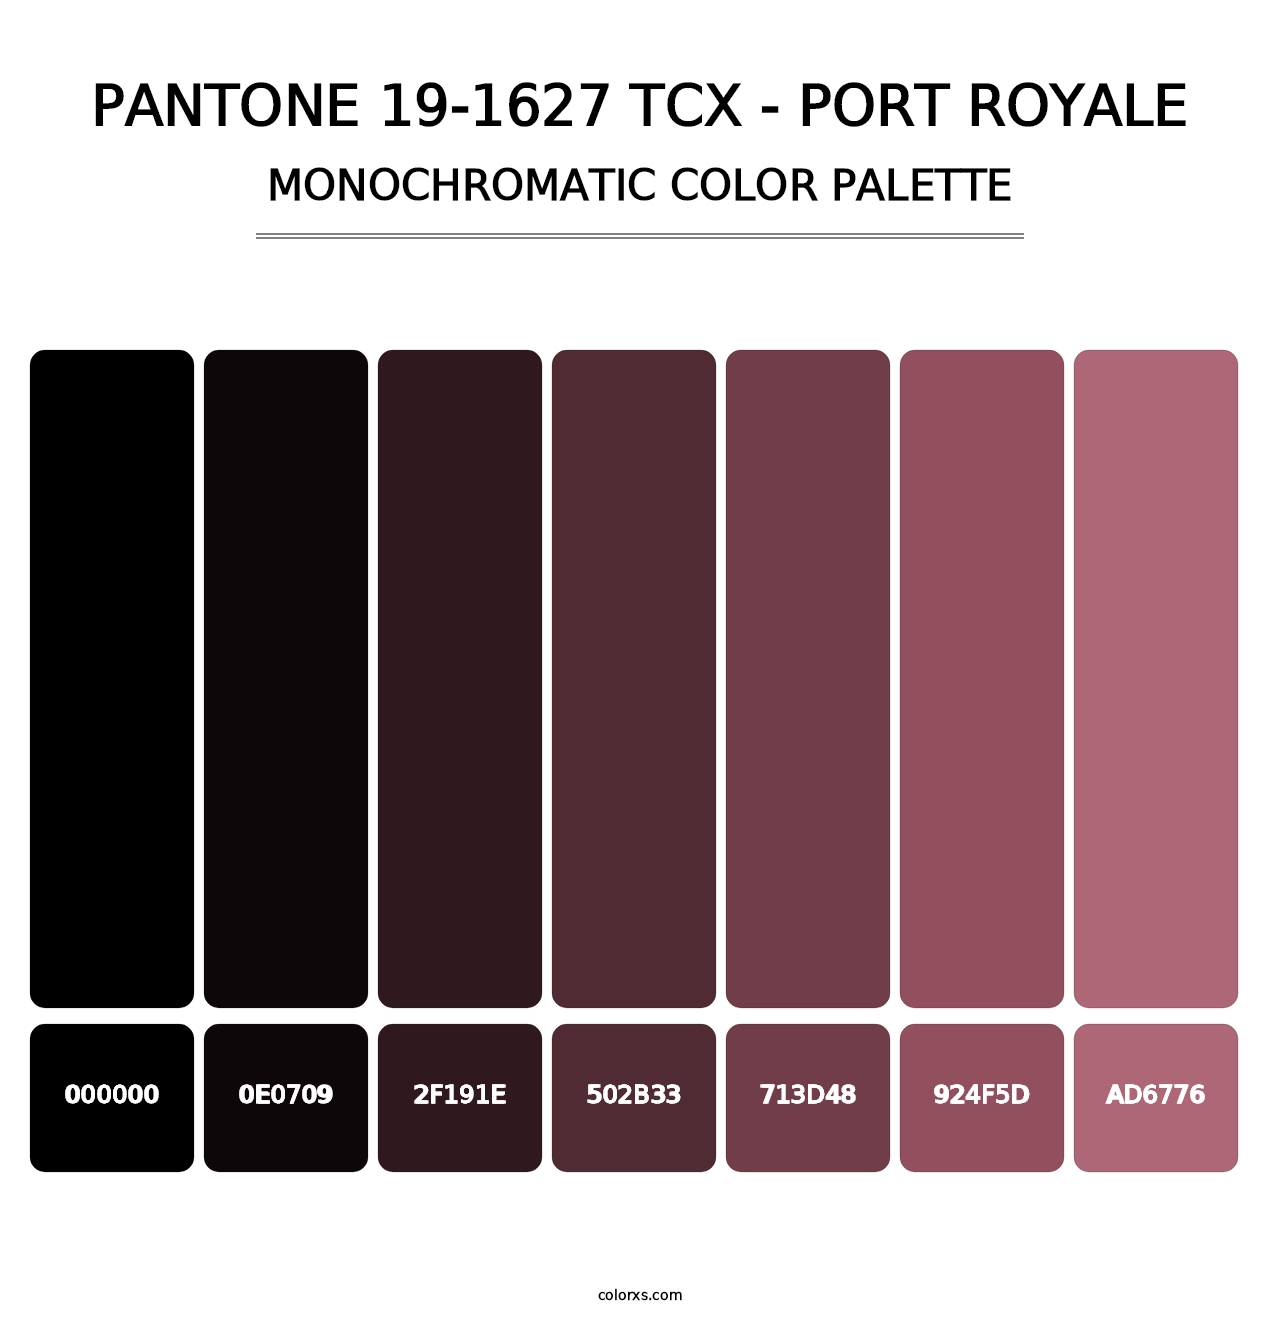 PANTONE 19-1627 TCX - Port Royale - Monochromatic Color Palette